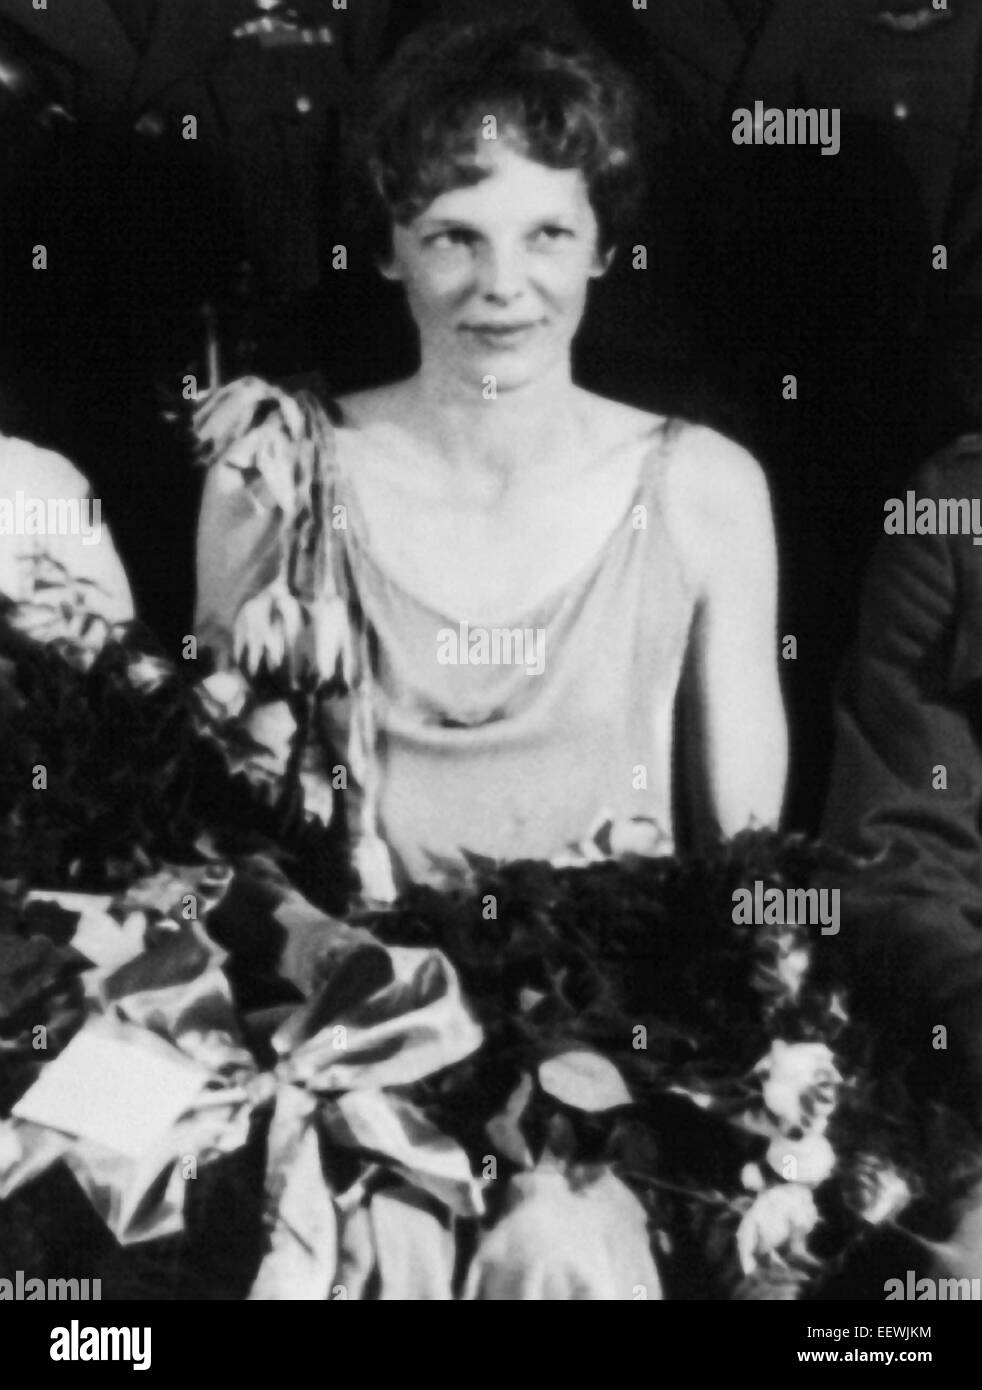 Vintage-Foto der amerikanischen Luftfahrtpionierin und Autorin Amelia Earhart (1897 – 1939 für tot erklärt) – Earhart und ihr Navigator Fred Noonan verschwanden 1937 bekanntermaßen, als sie versuchte, das erste Weibchen zu werden, das einen Rundflug über den Globus absolvierte. Foto ca. 1930. Stockfoto